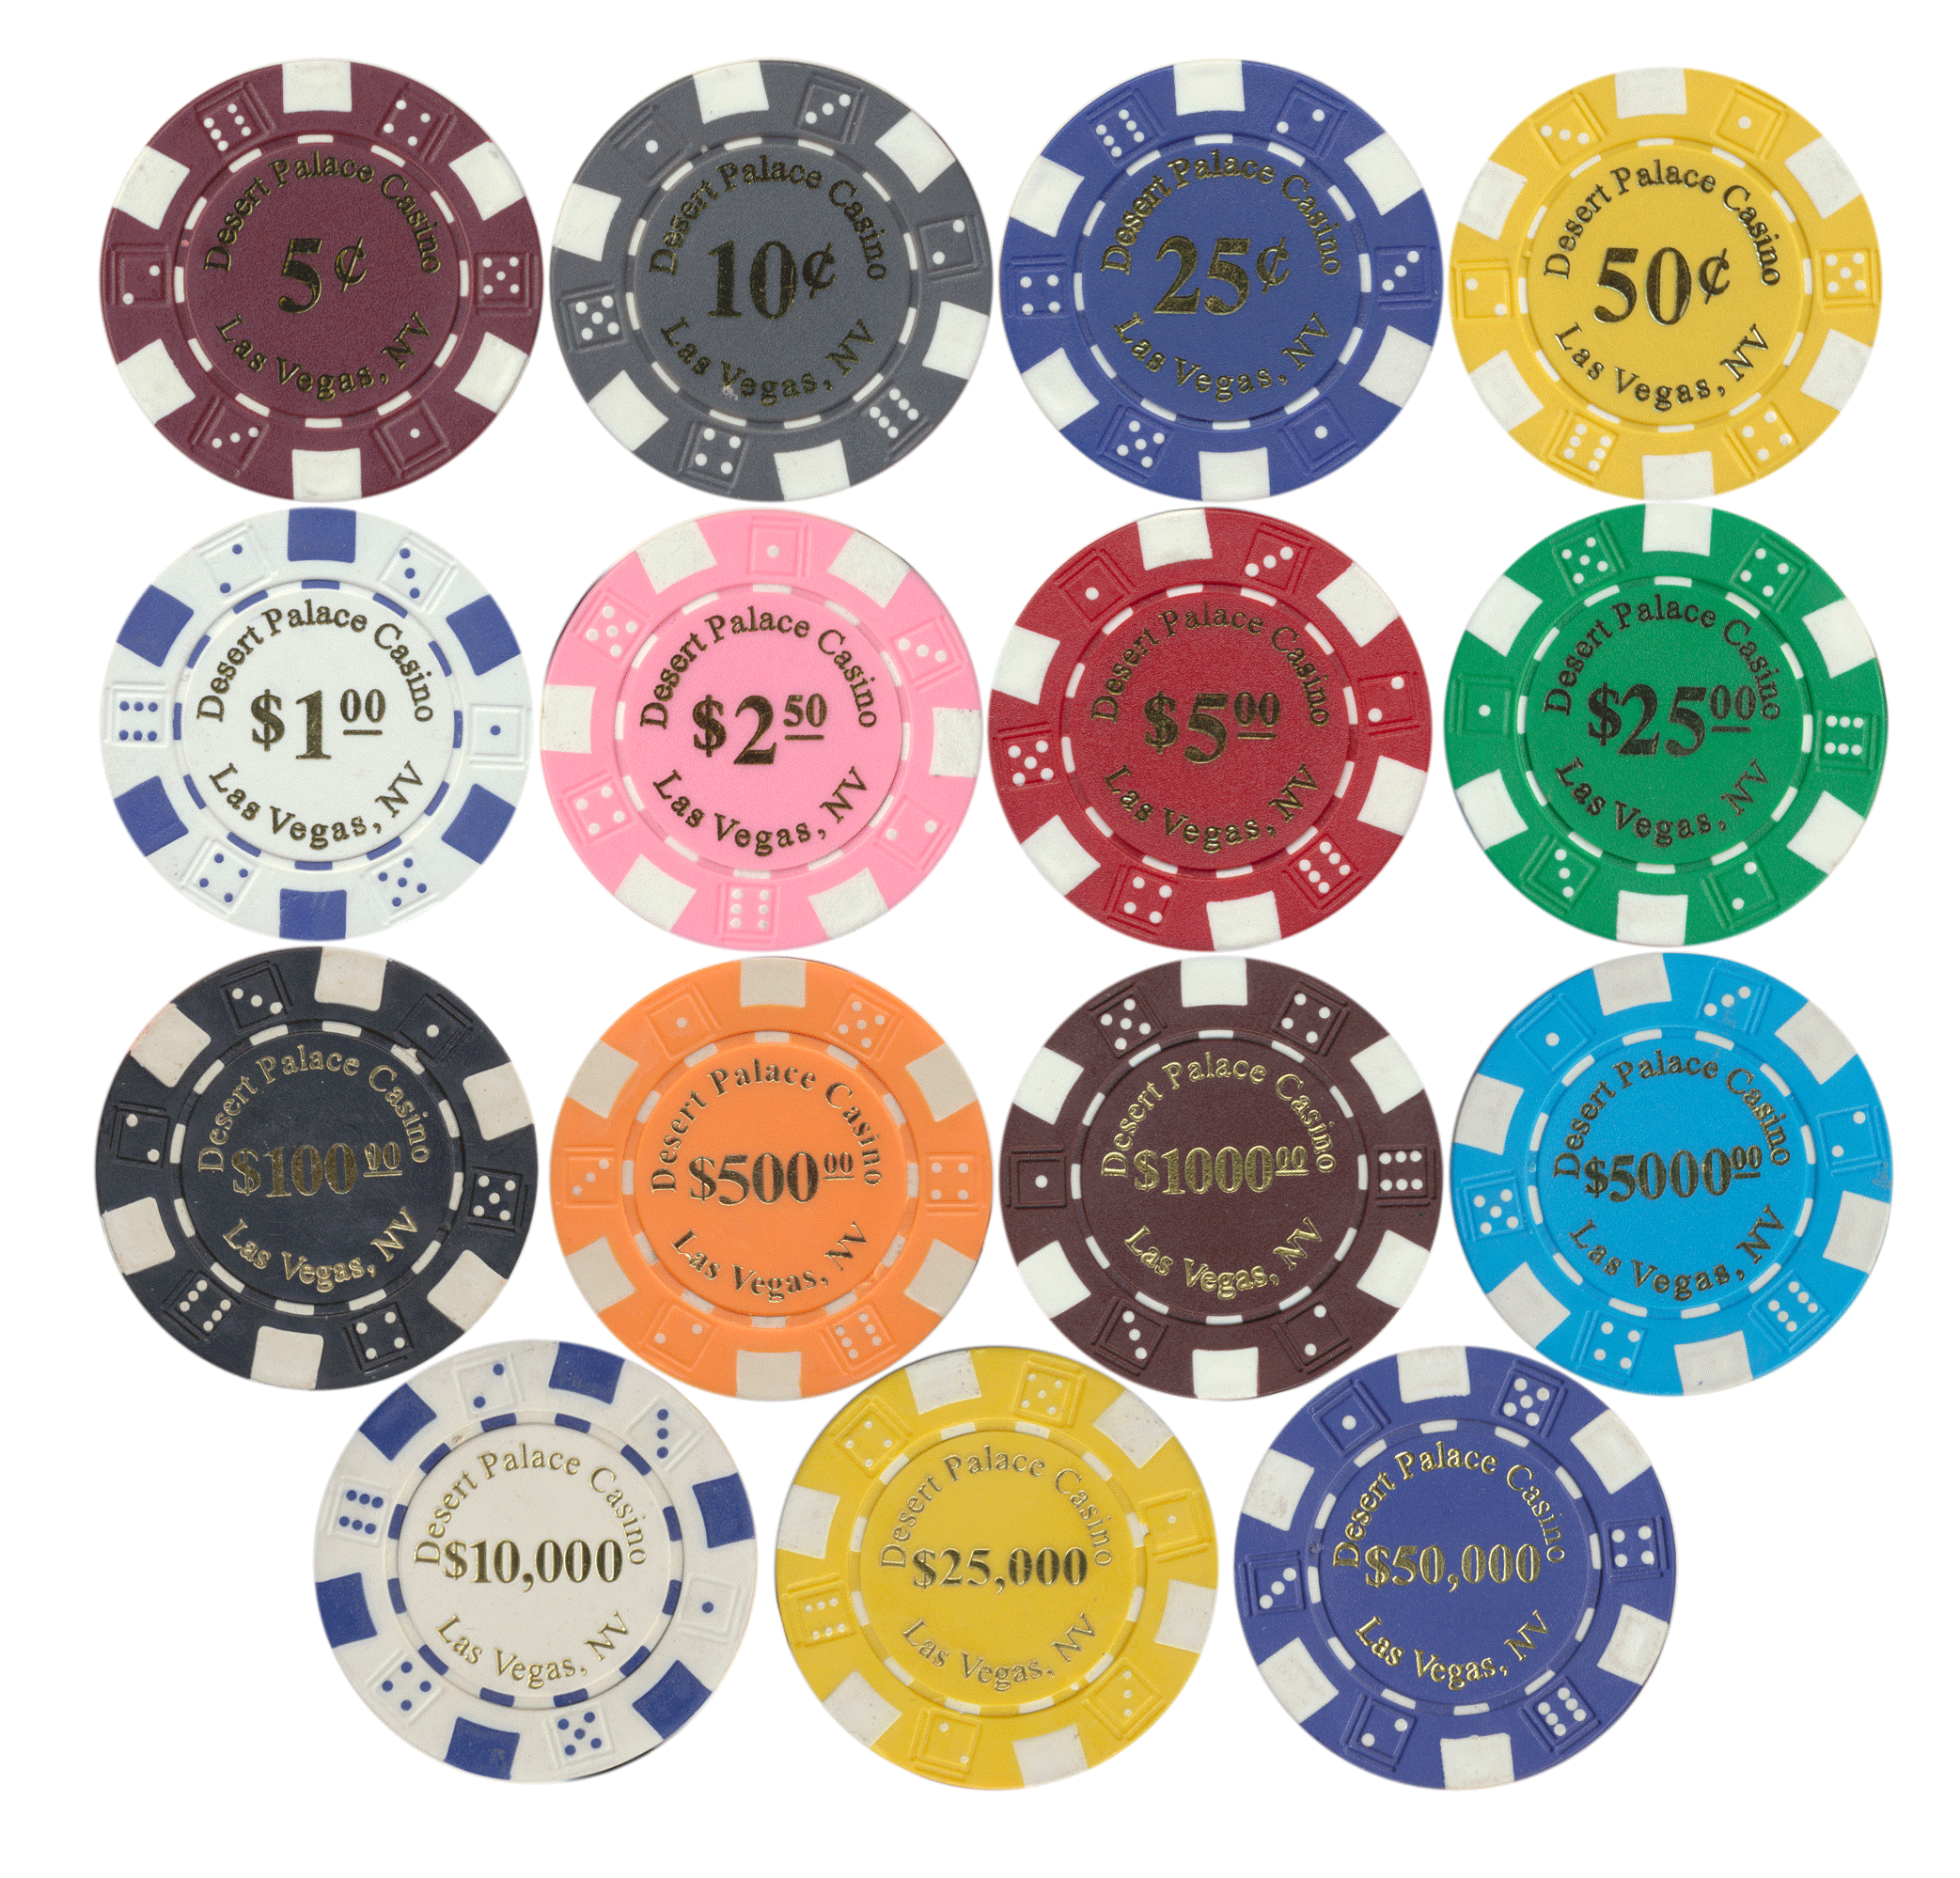 Las Vegas NV USA $1 CAESARS PALACE Casino Chip.. 